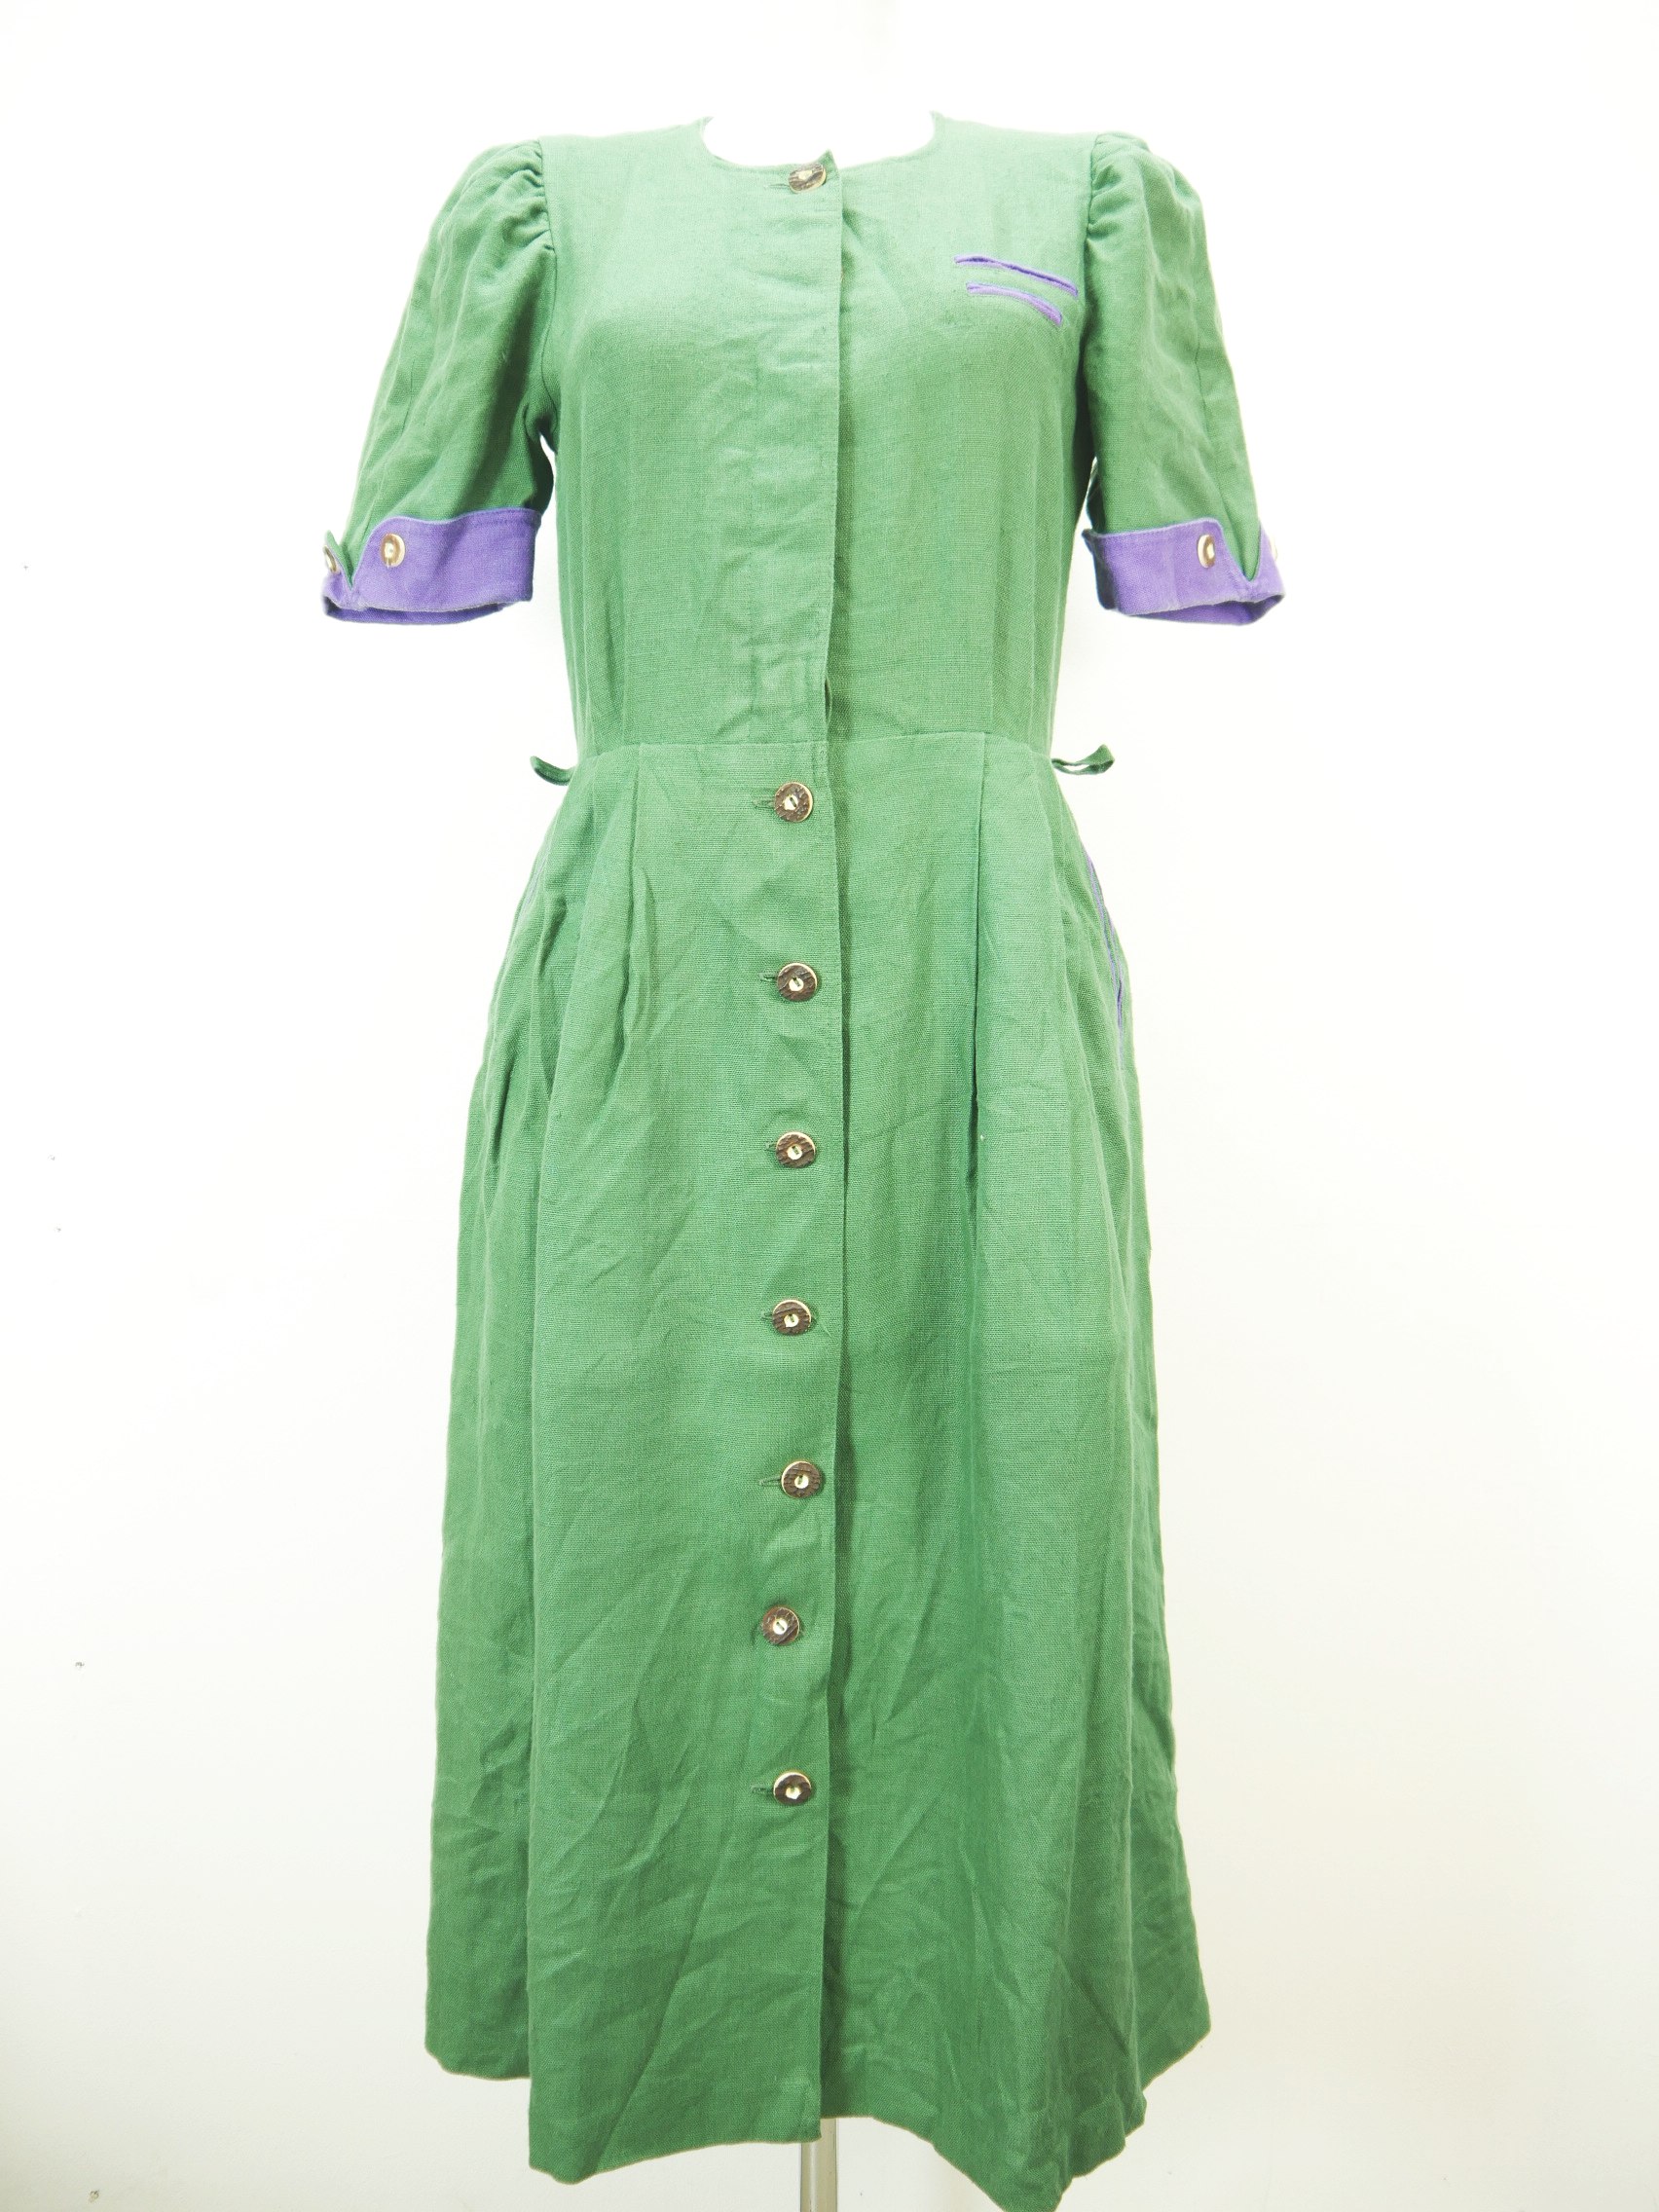 Herrlich grün mit Puffärmel fabelhaftes Landhaus Kleid Trachtenkleid Gr.40